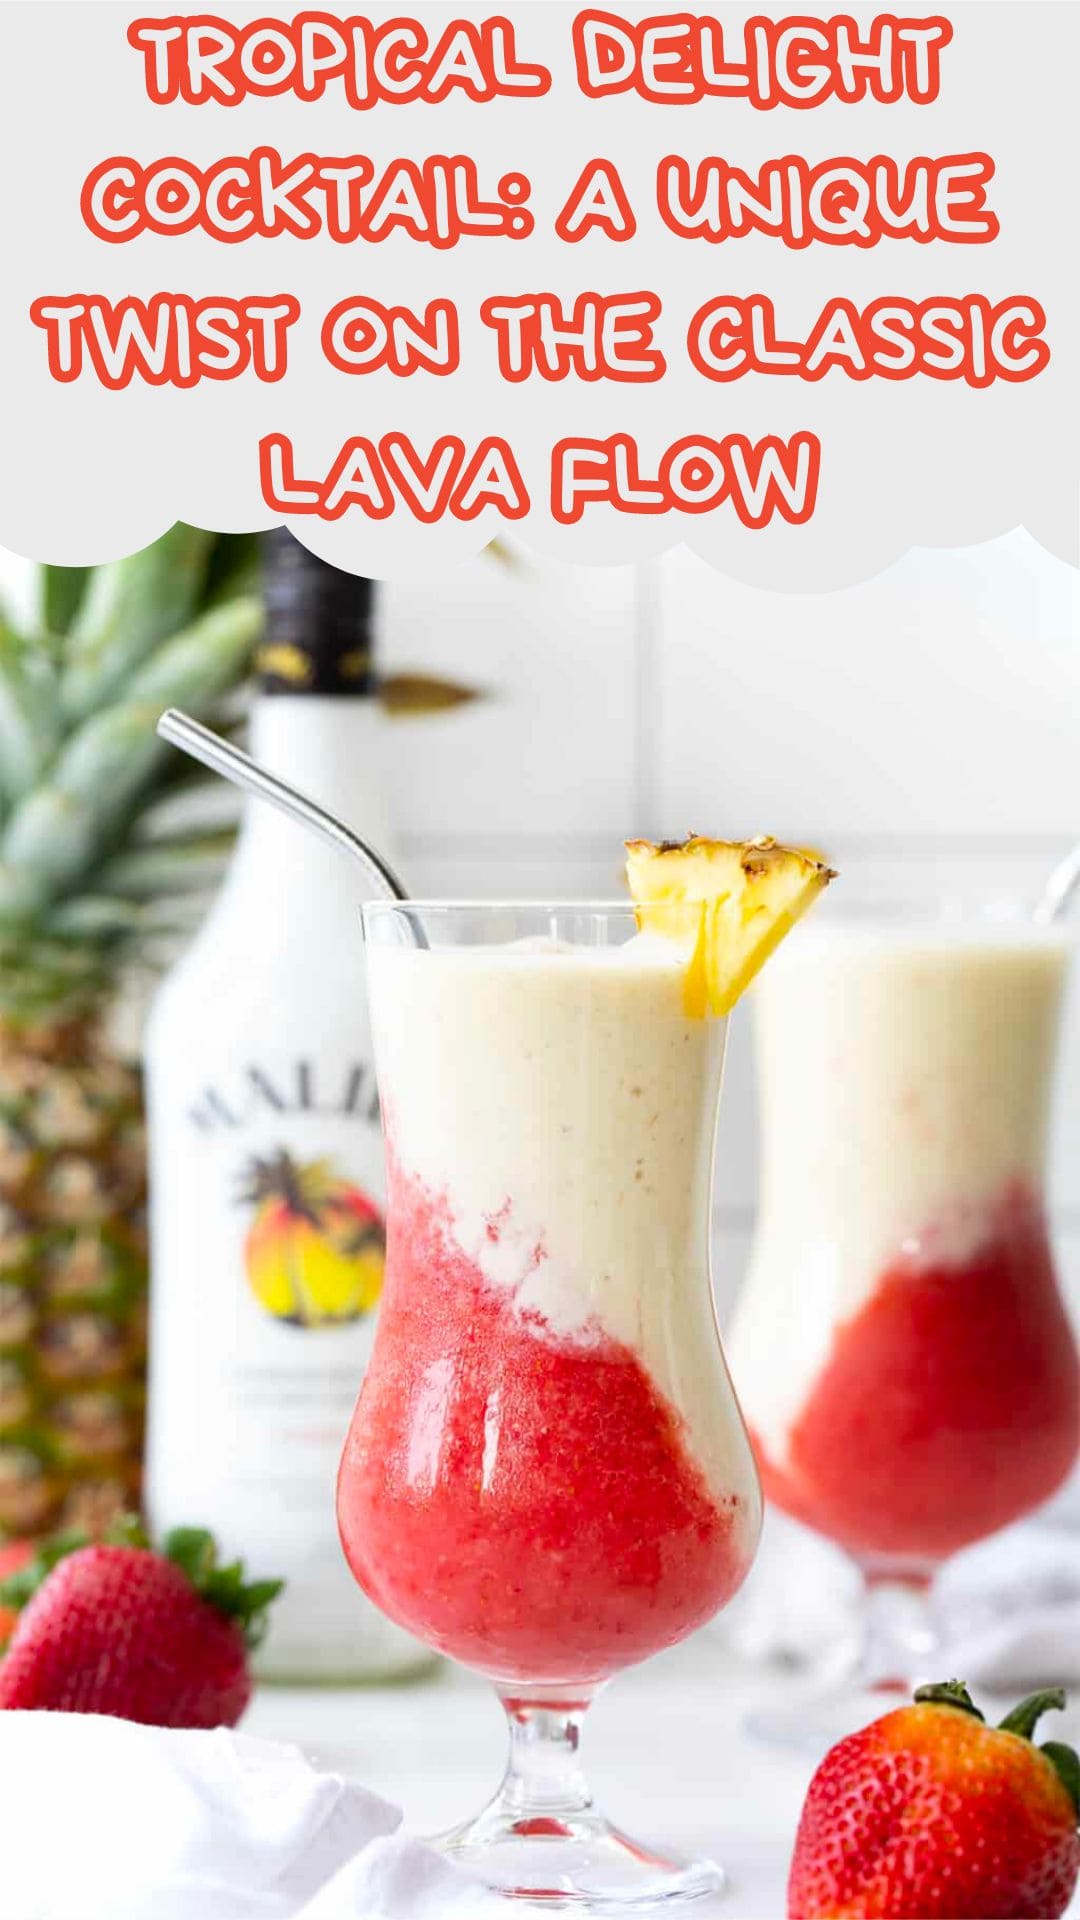 Tropical Delight Cocktail: A Unique Twist on the Classic Lava Flow